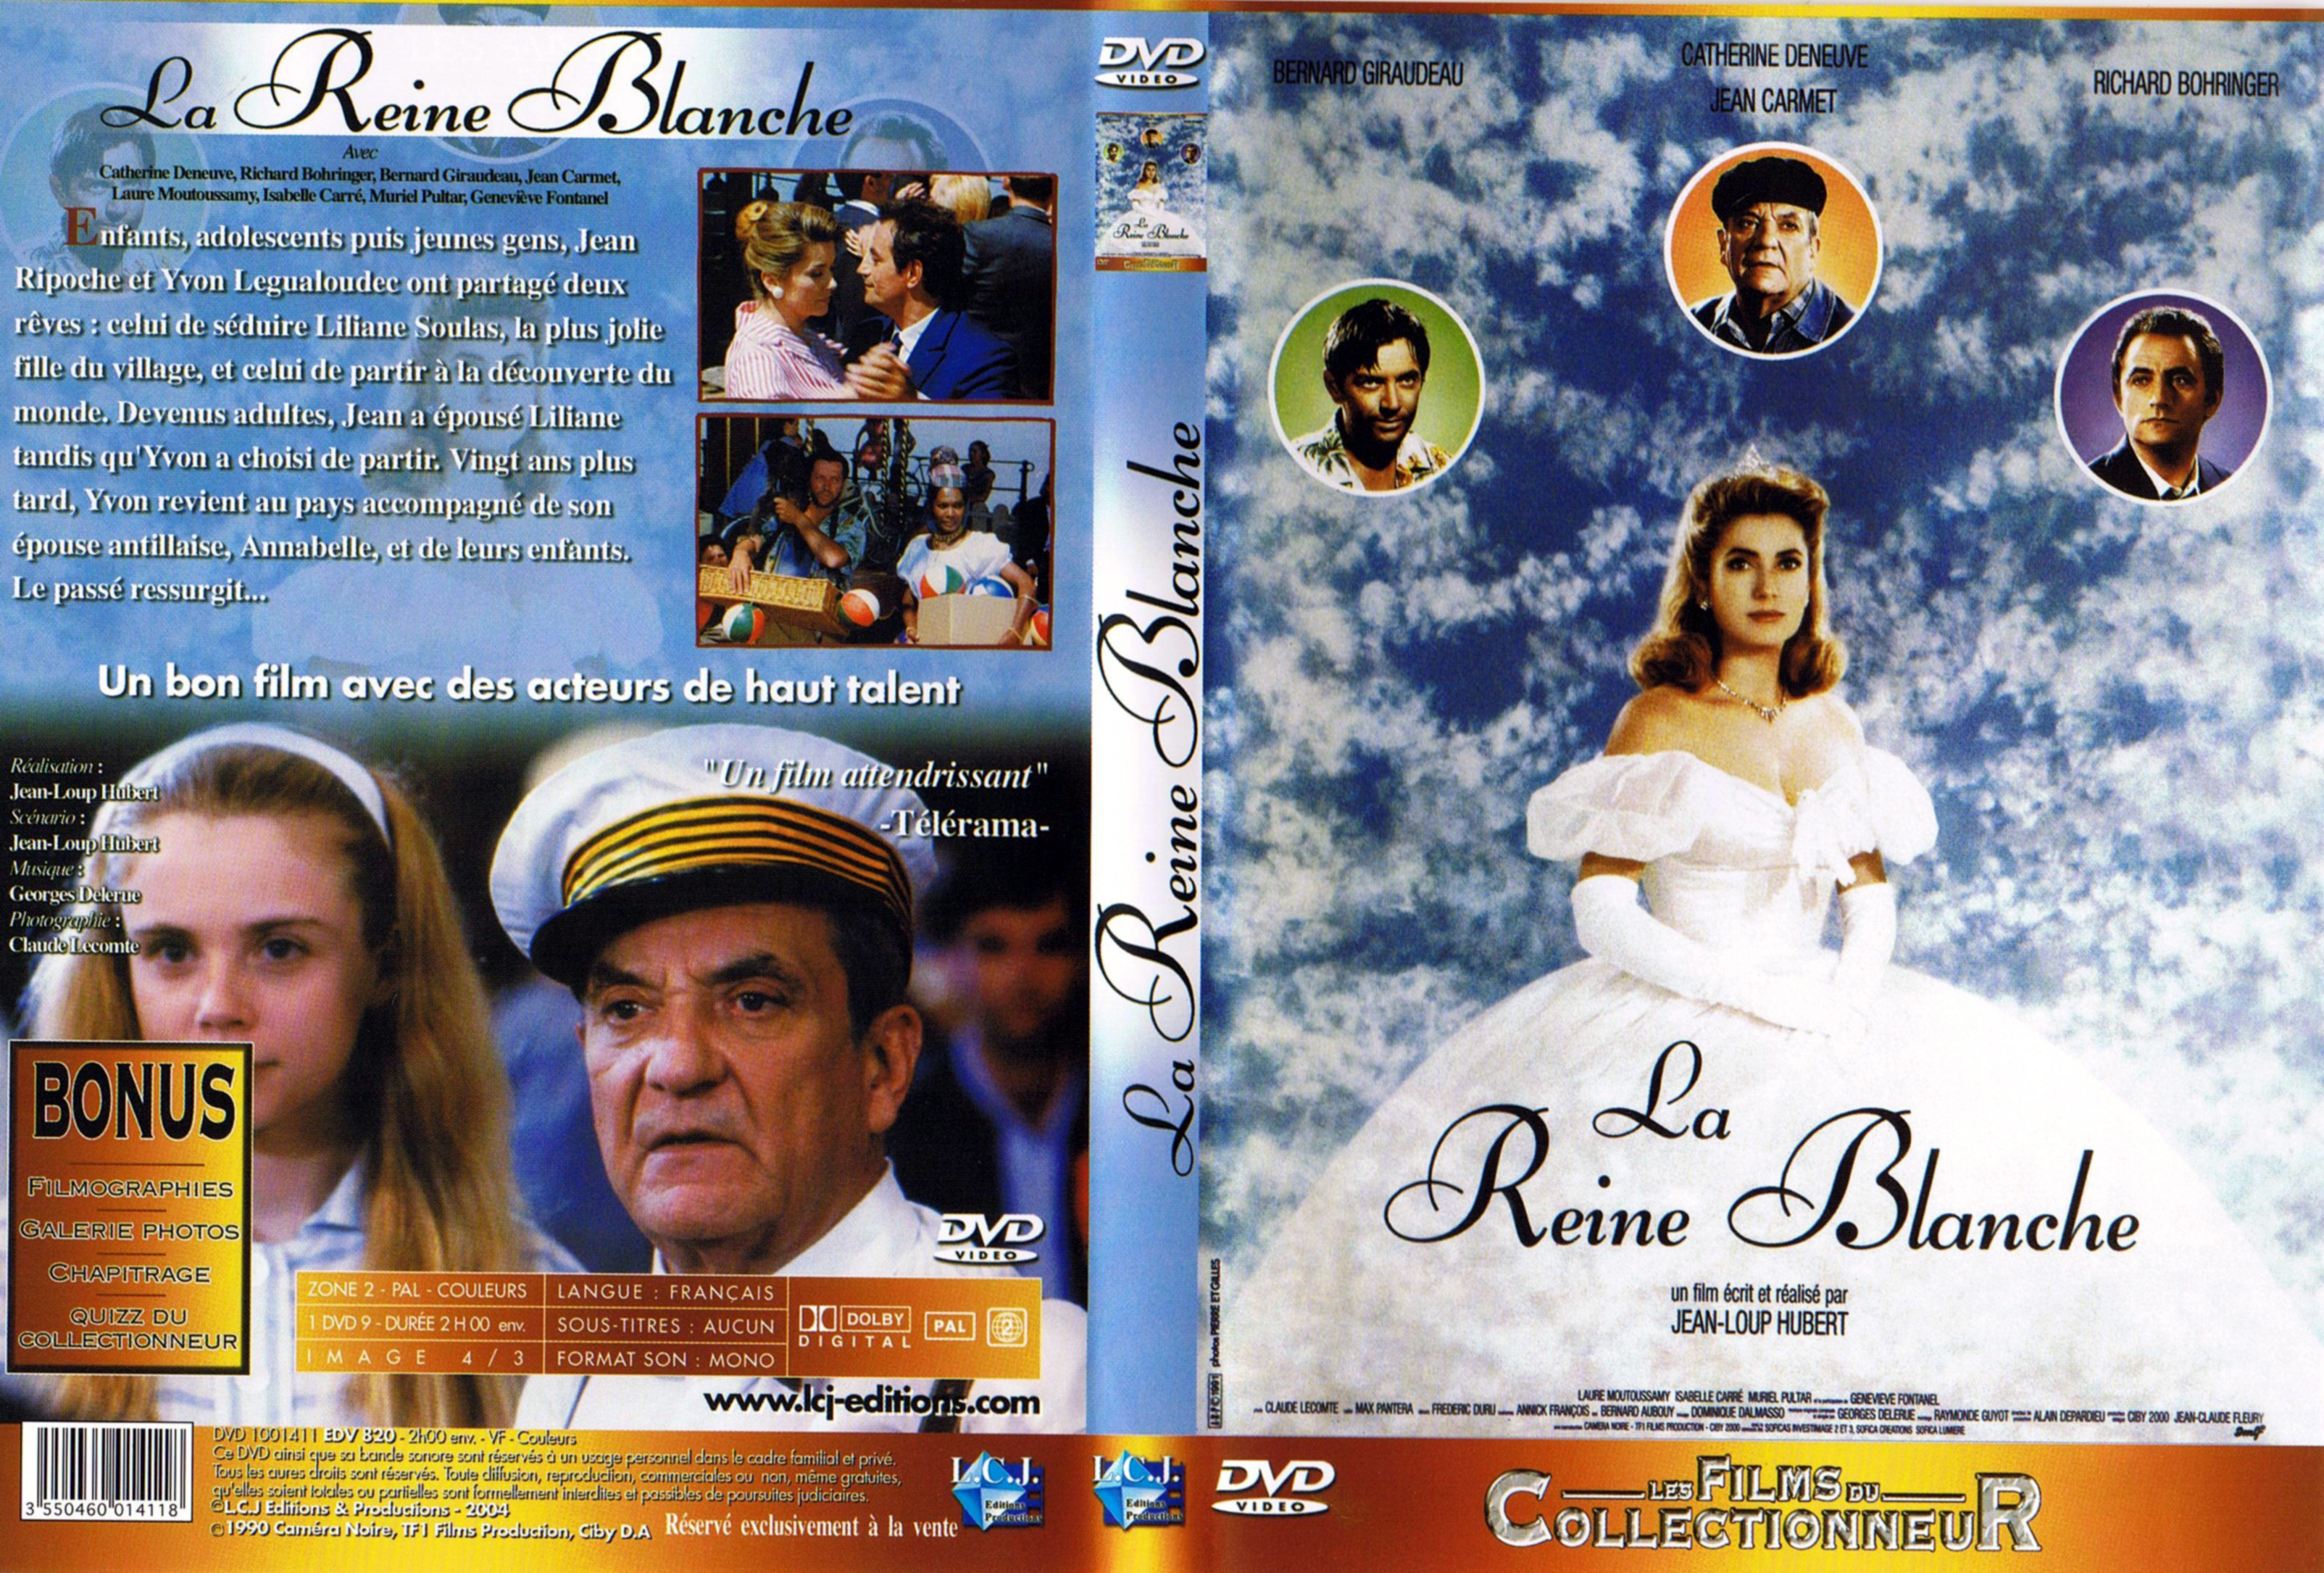 Jaquette DVD La reine blanche